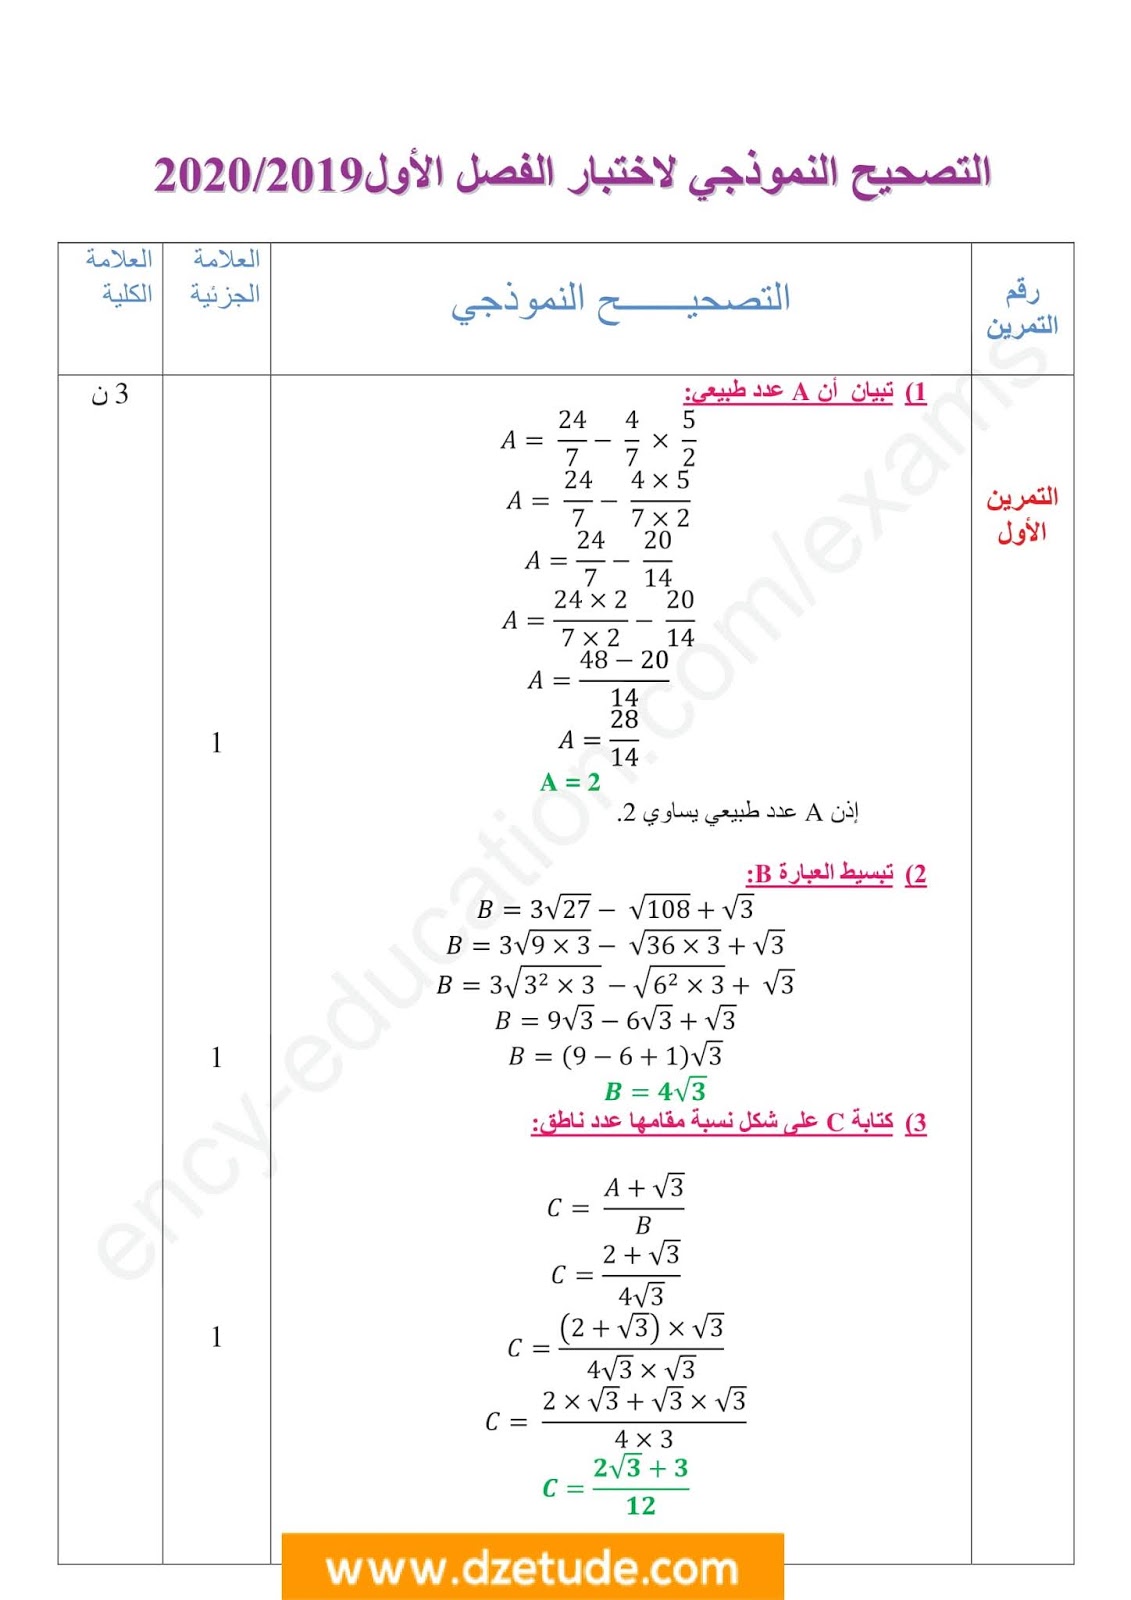 إختبار الفصل الأول في الرياضيات للسنة الرابعة متوسط - الجيل الثاني نموذج 6